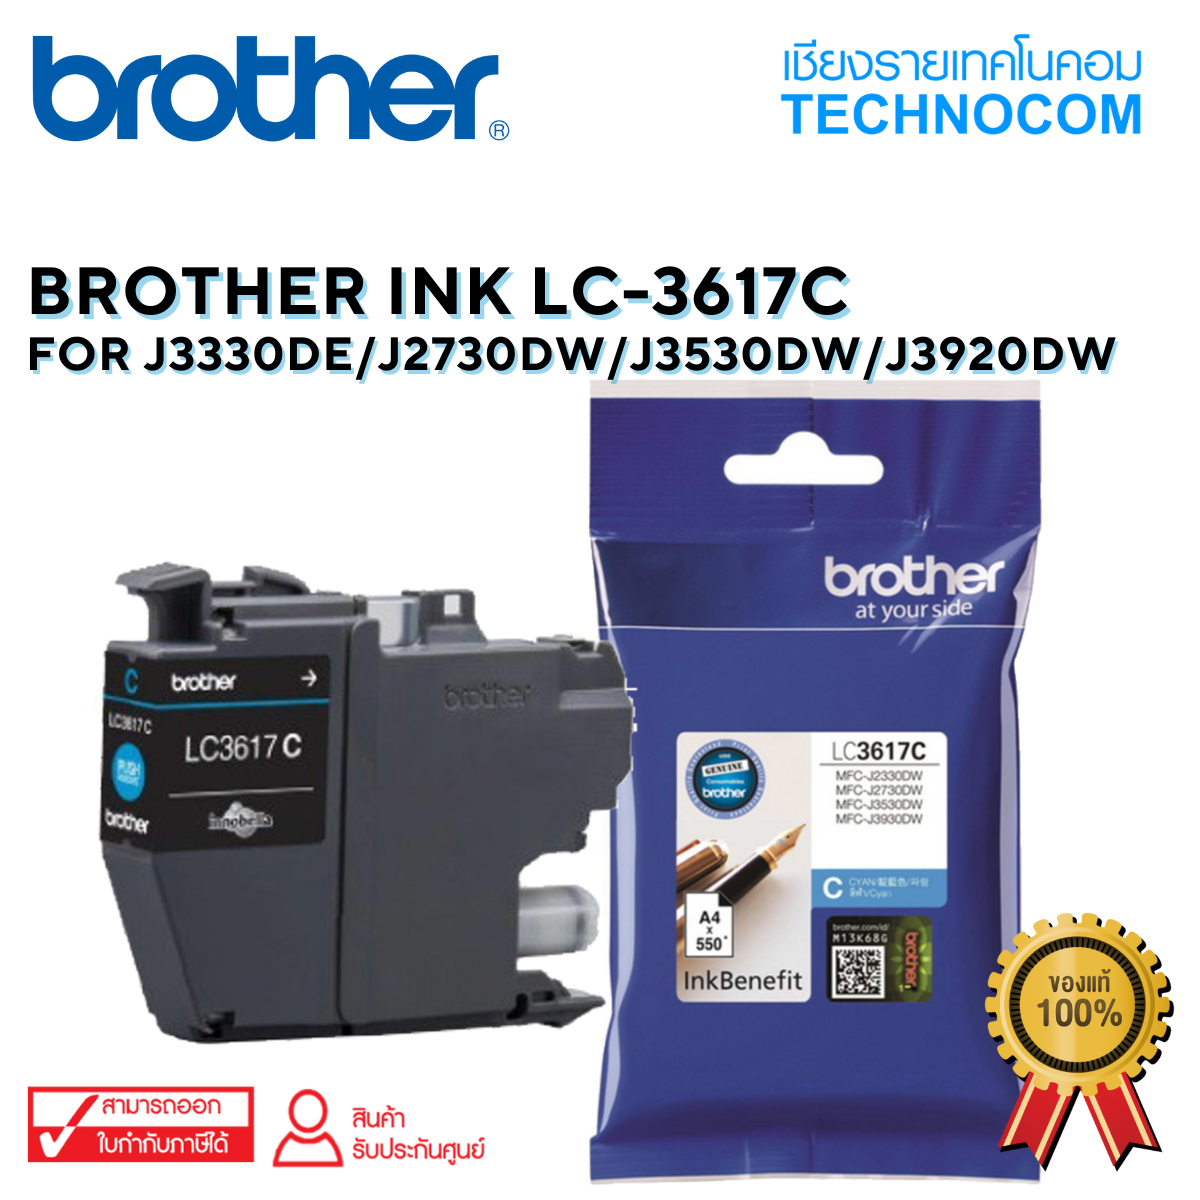 BROTHER INK LC-3617C For J2330DW/J2730DW/J3530DW/J3920DW(copy)